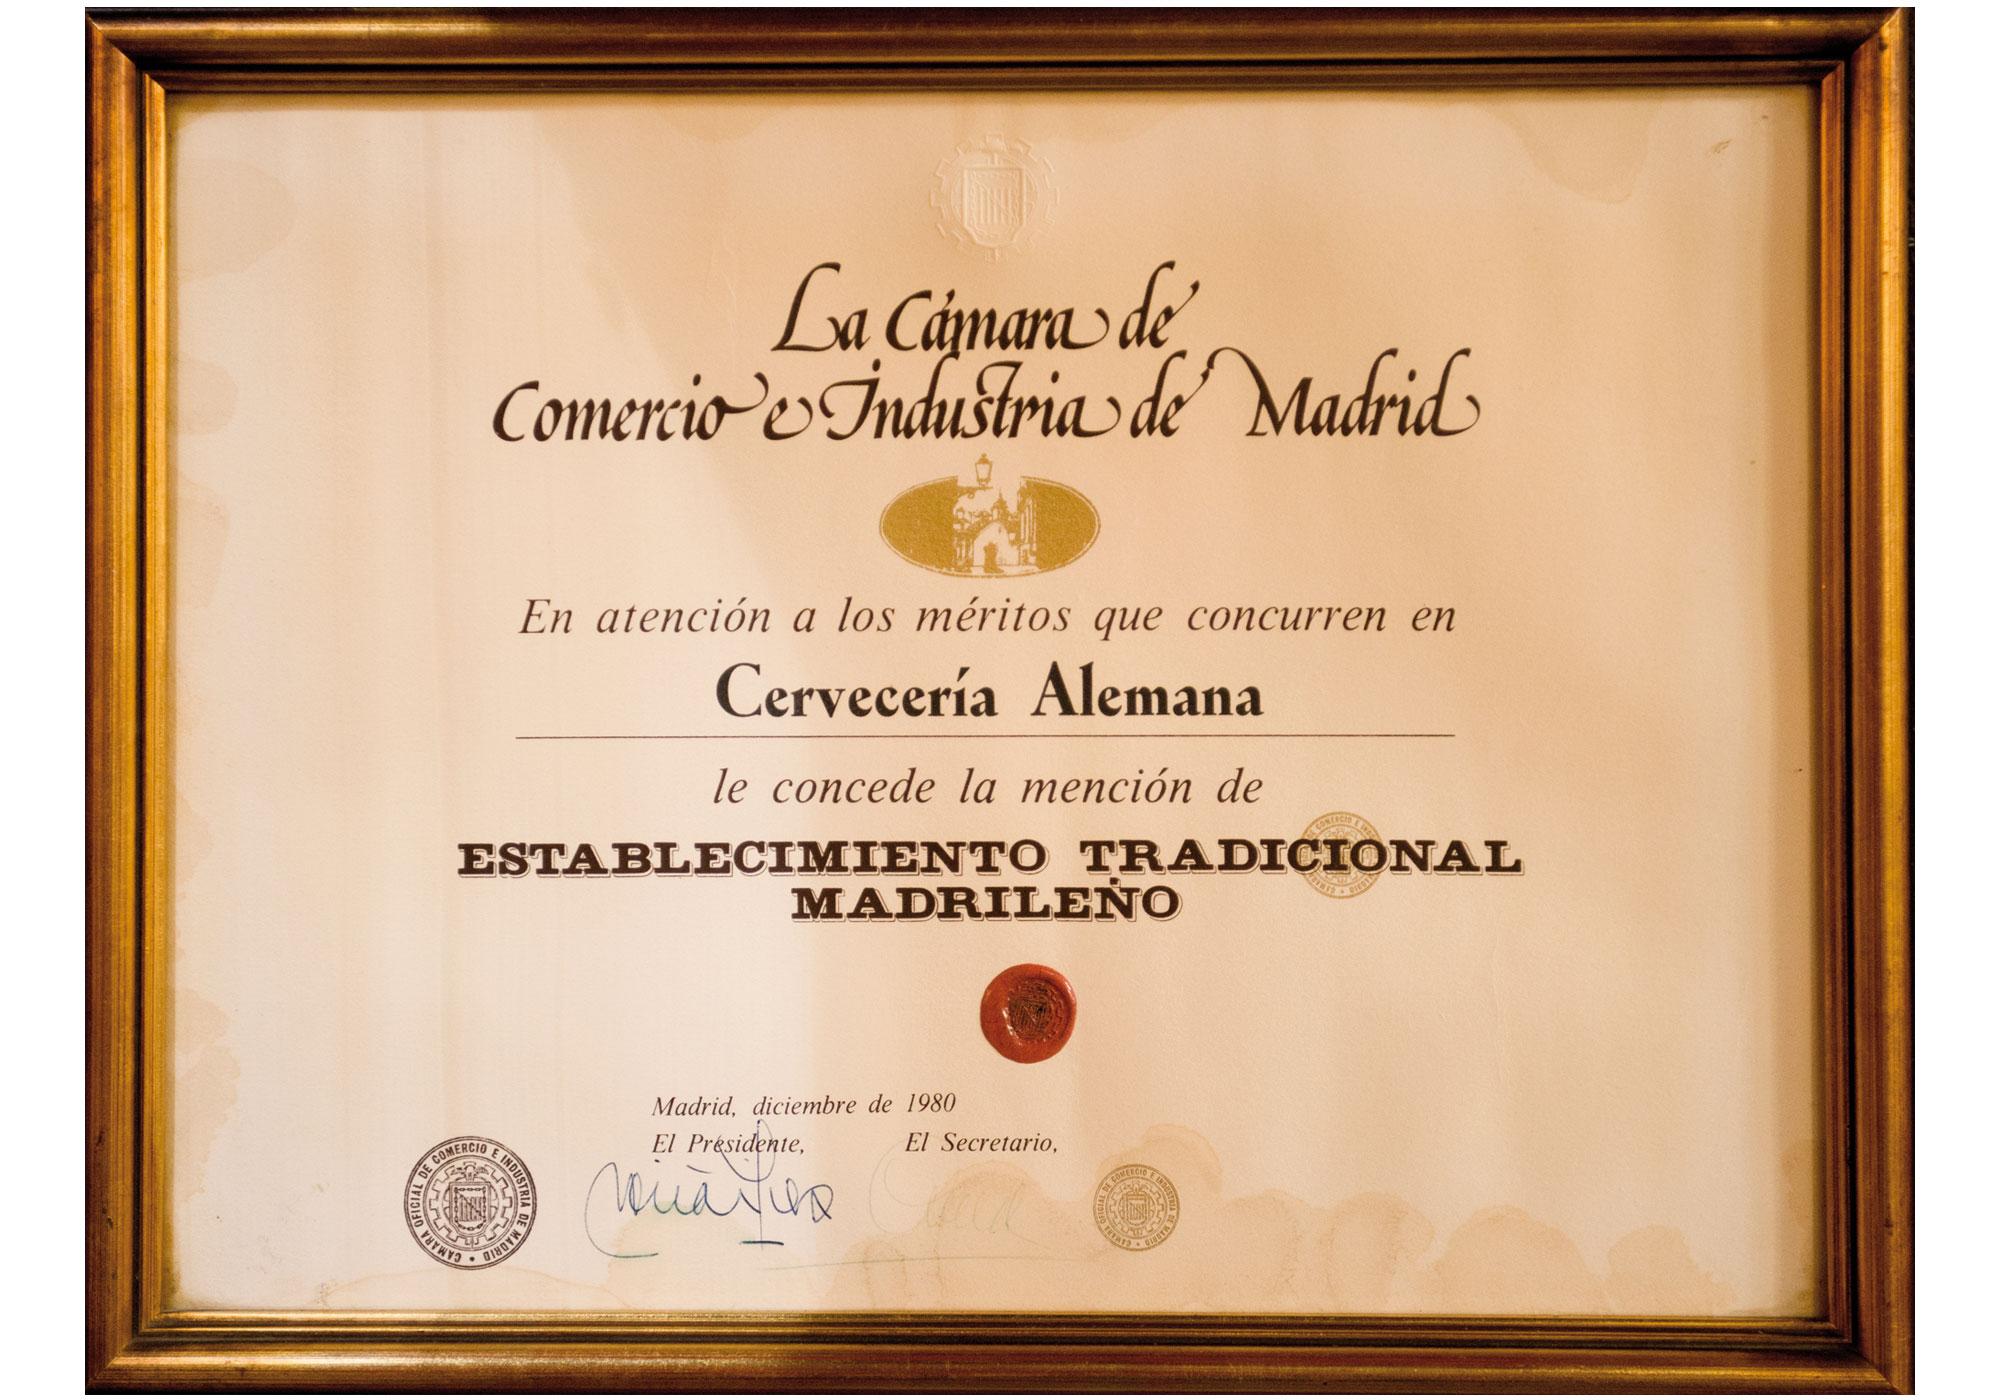 Desde 1980 somos Establecimiento Tradicional Madrileño